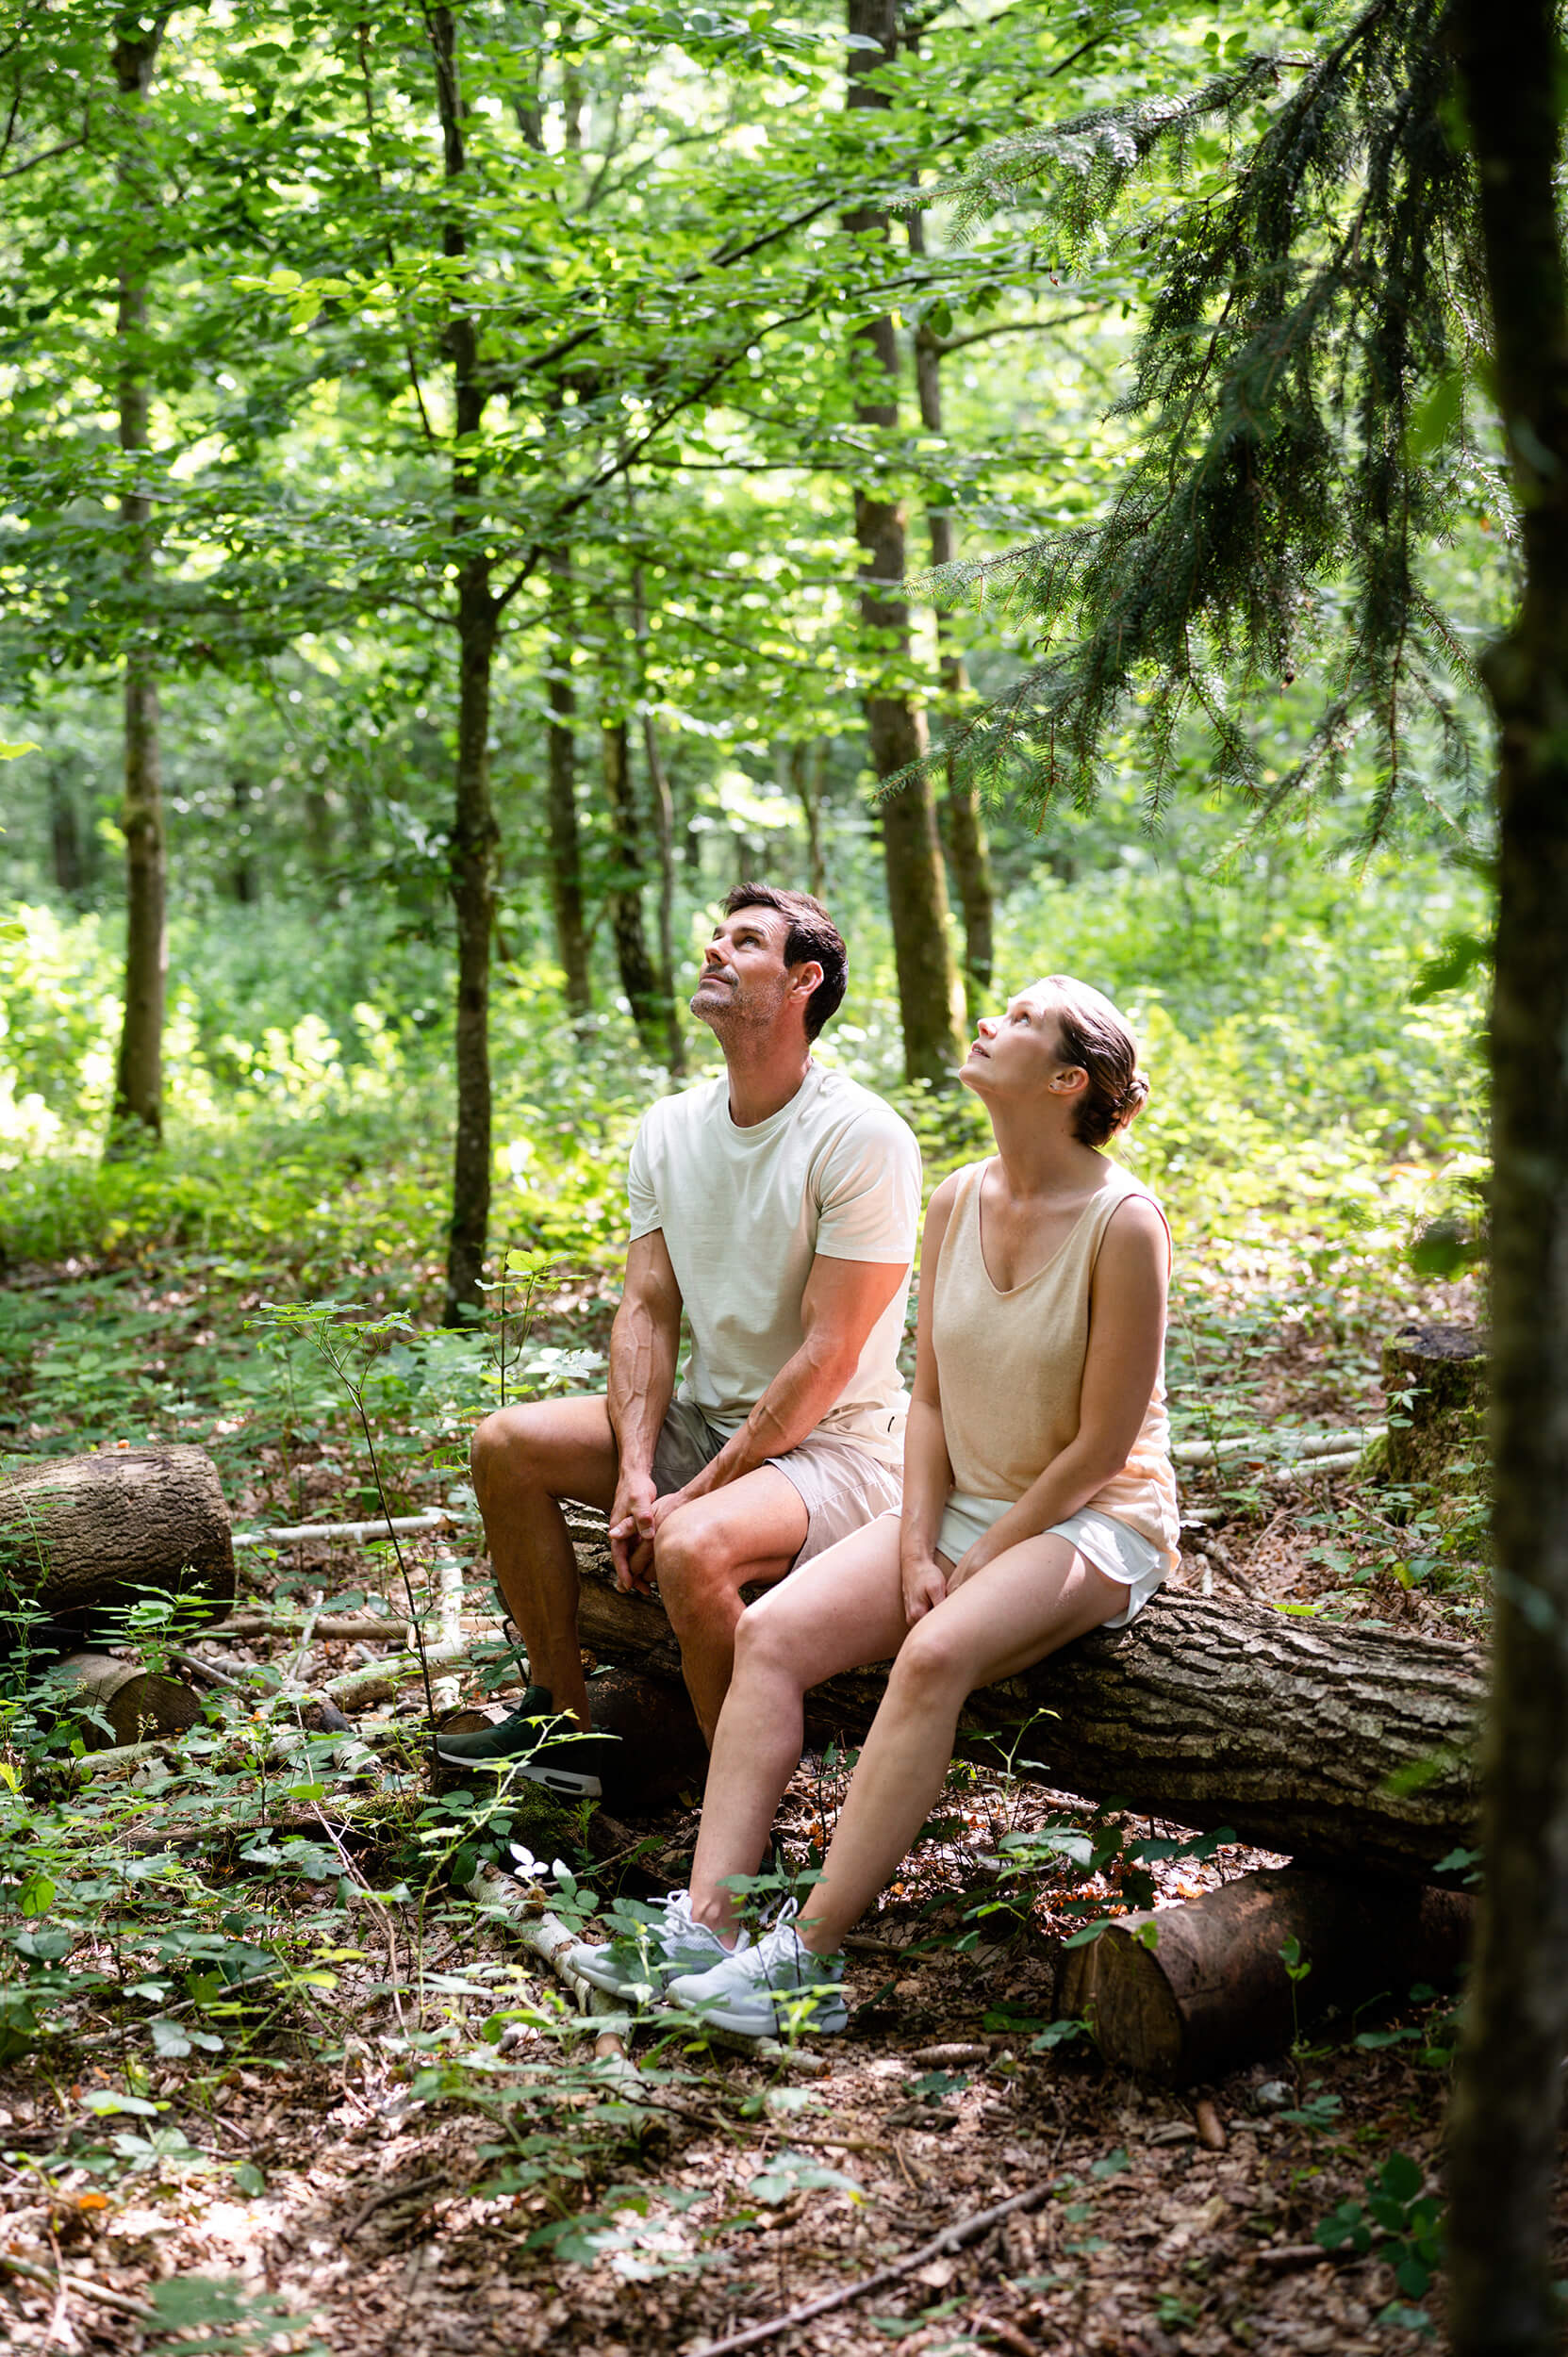 Zwei Personen auf einem Baumstamm sitzend in den Himmel blickend